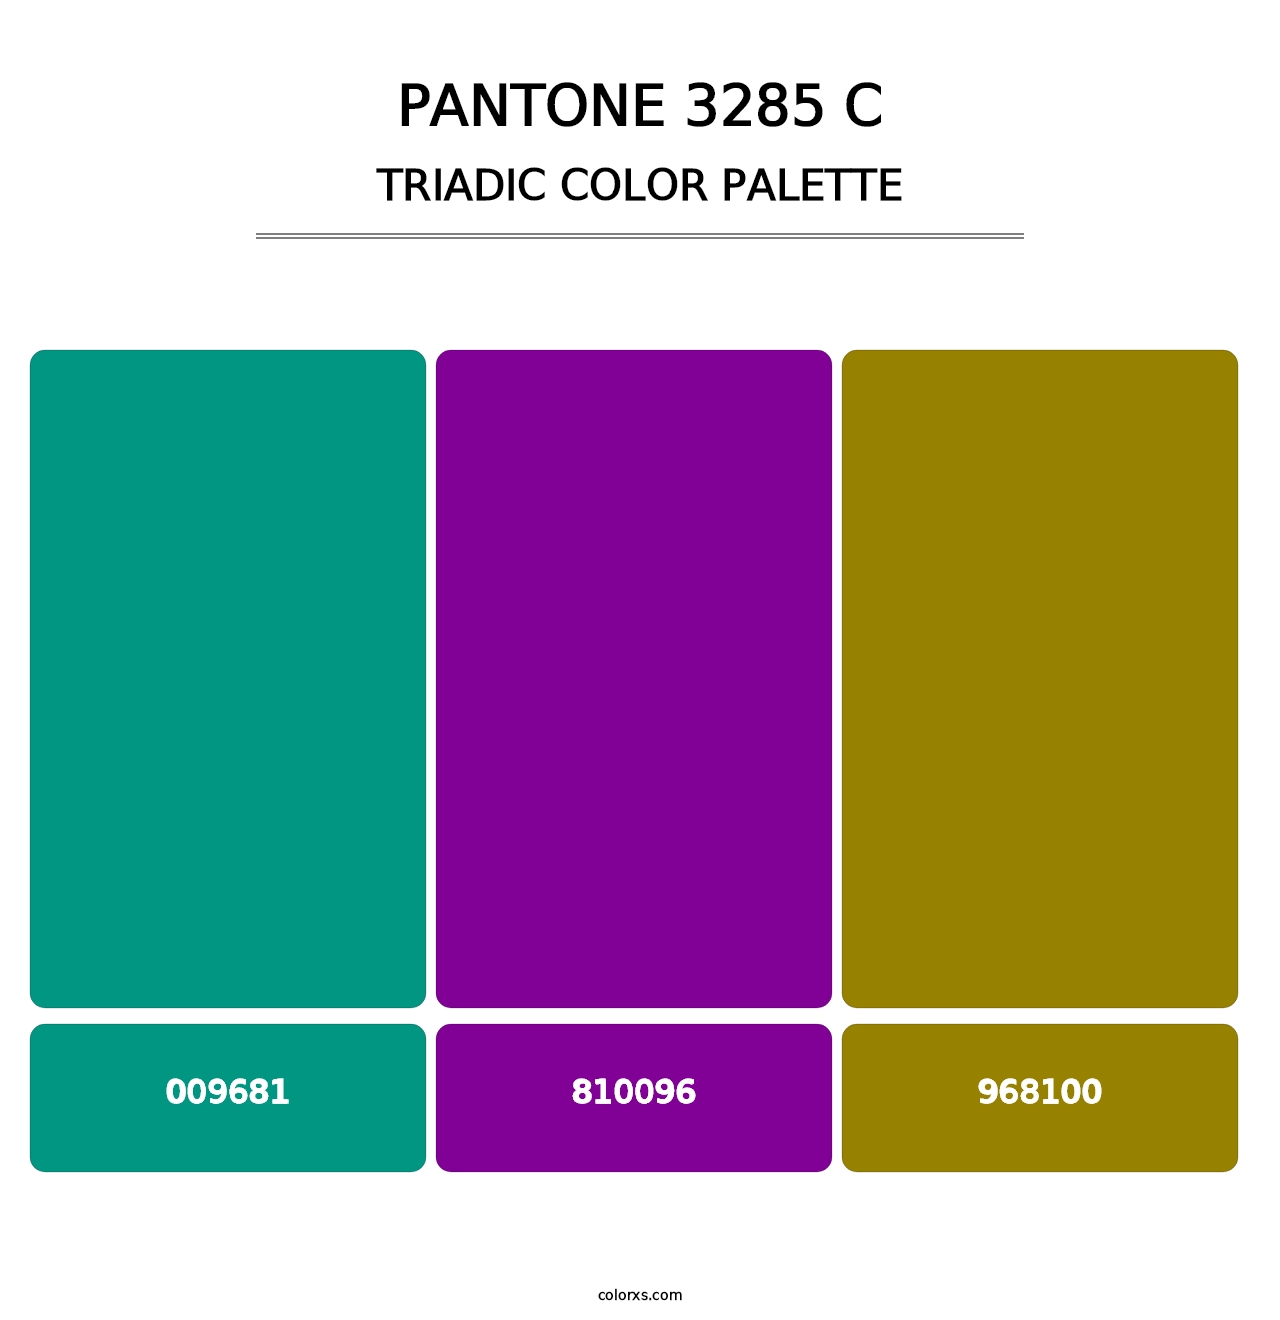 PANTONE 3285 C - Triadic Color Palette